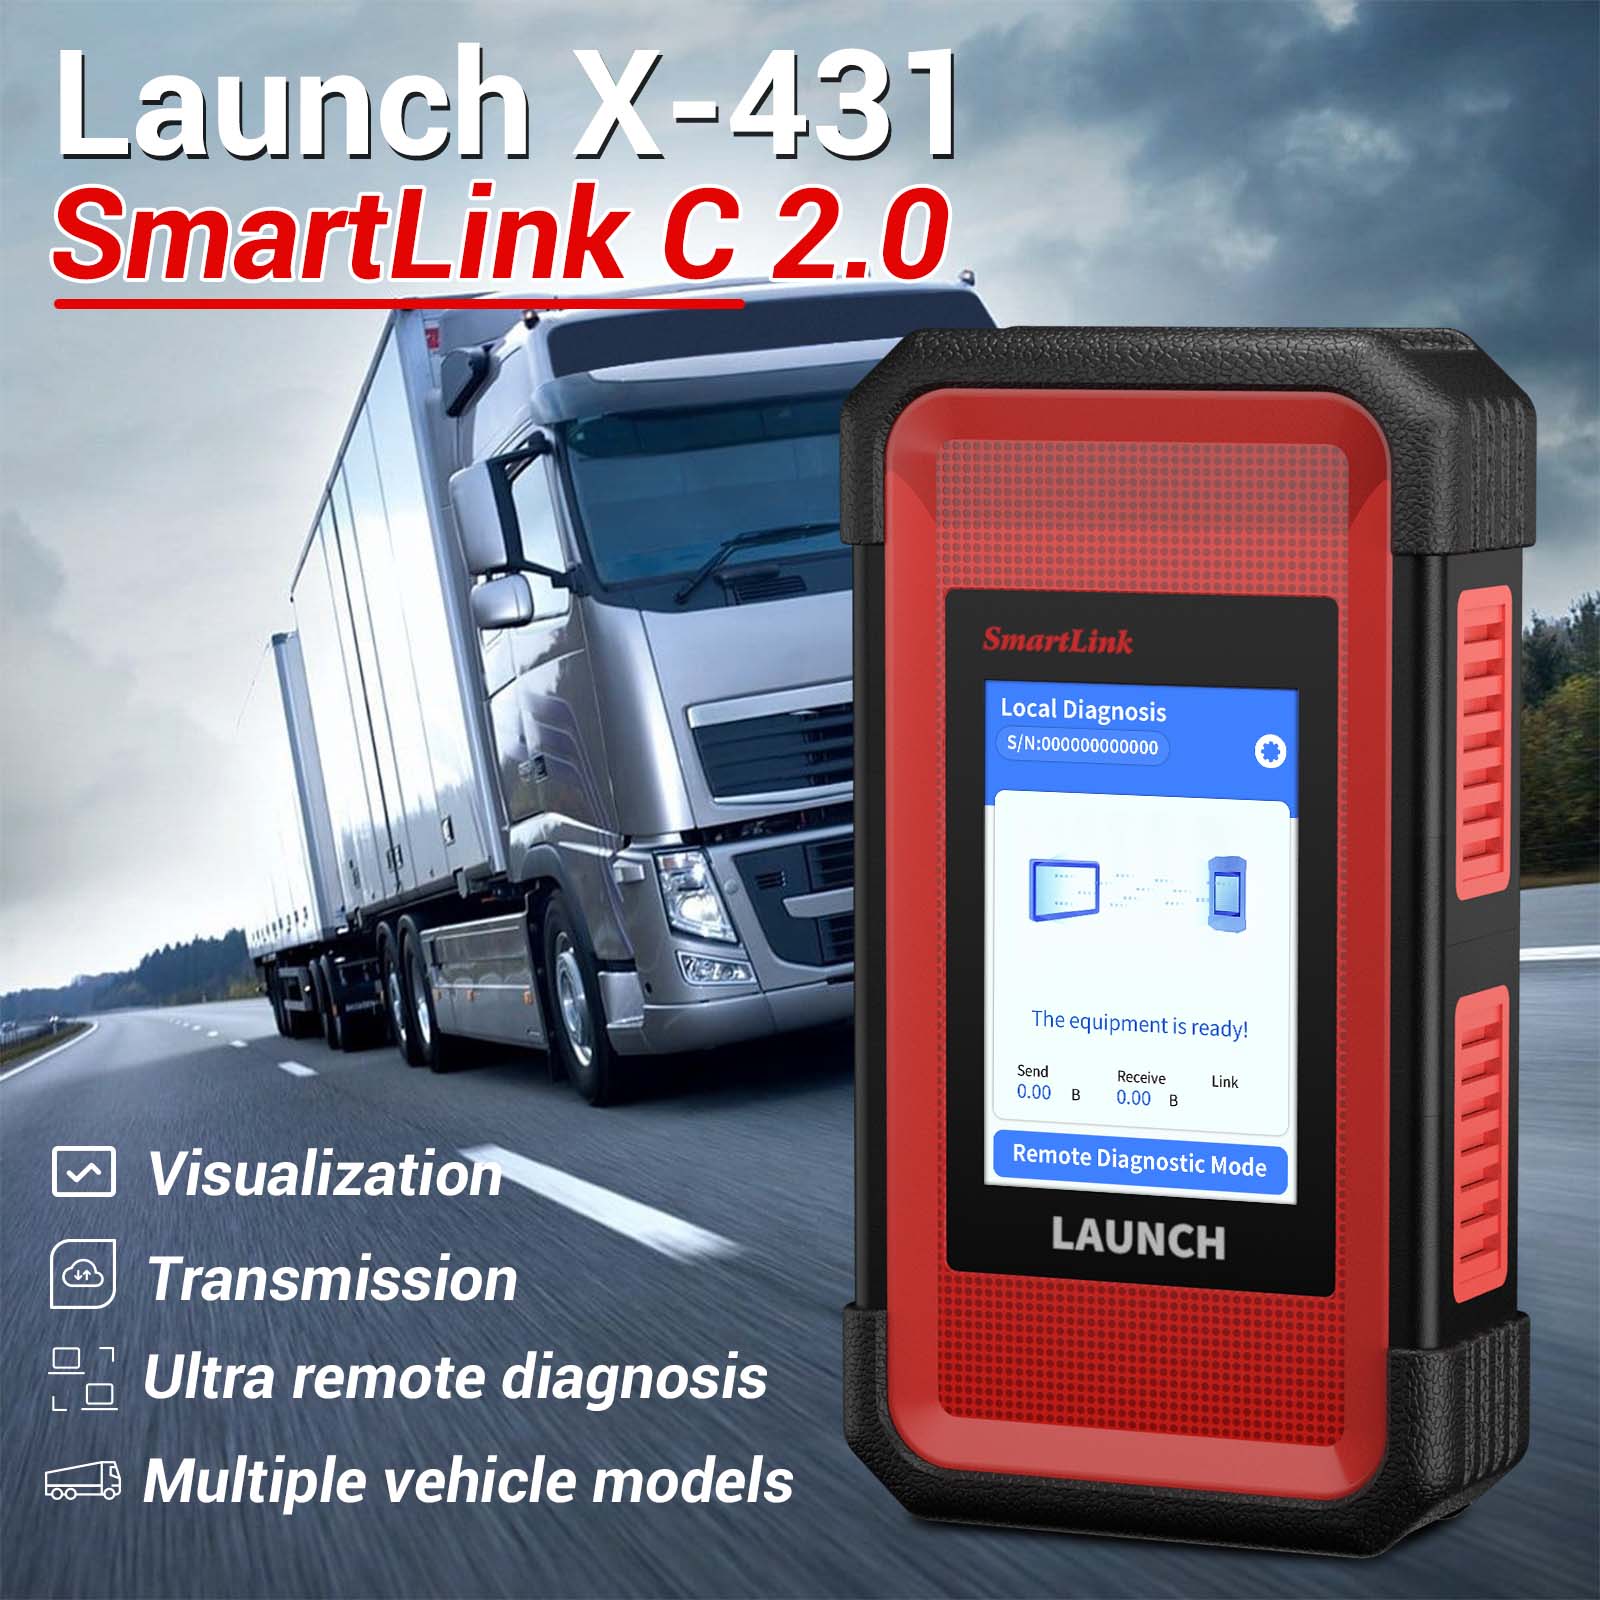 Launch X-431 SmartLink C features